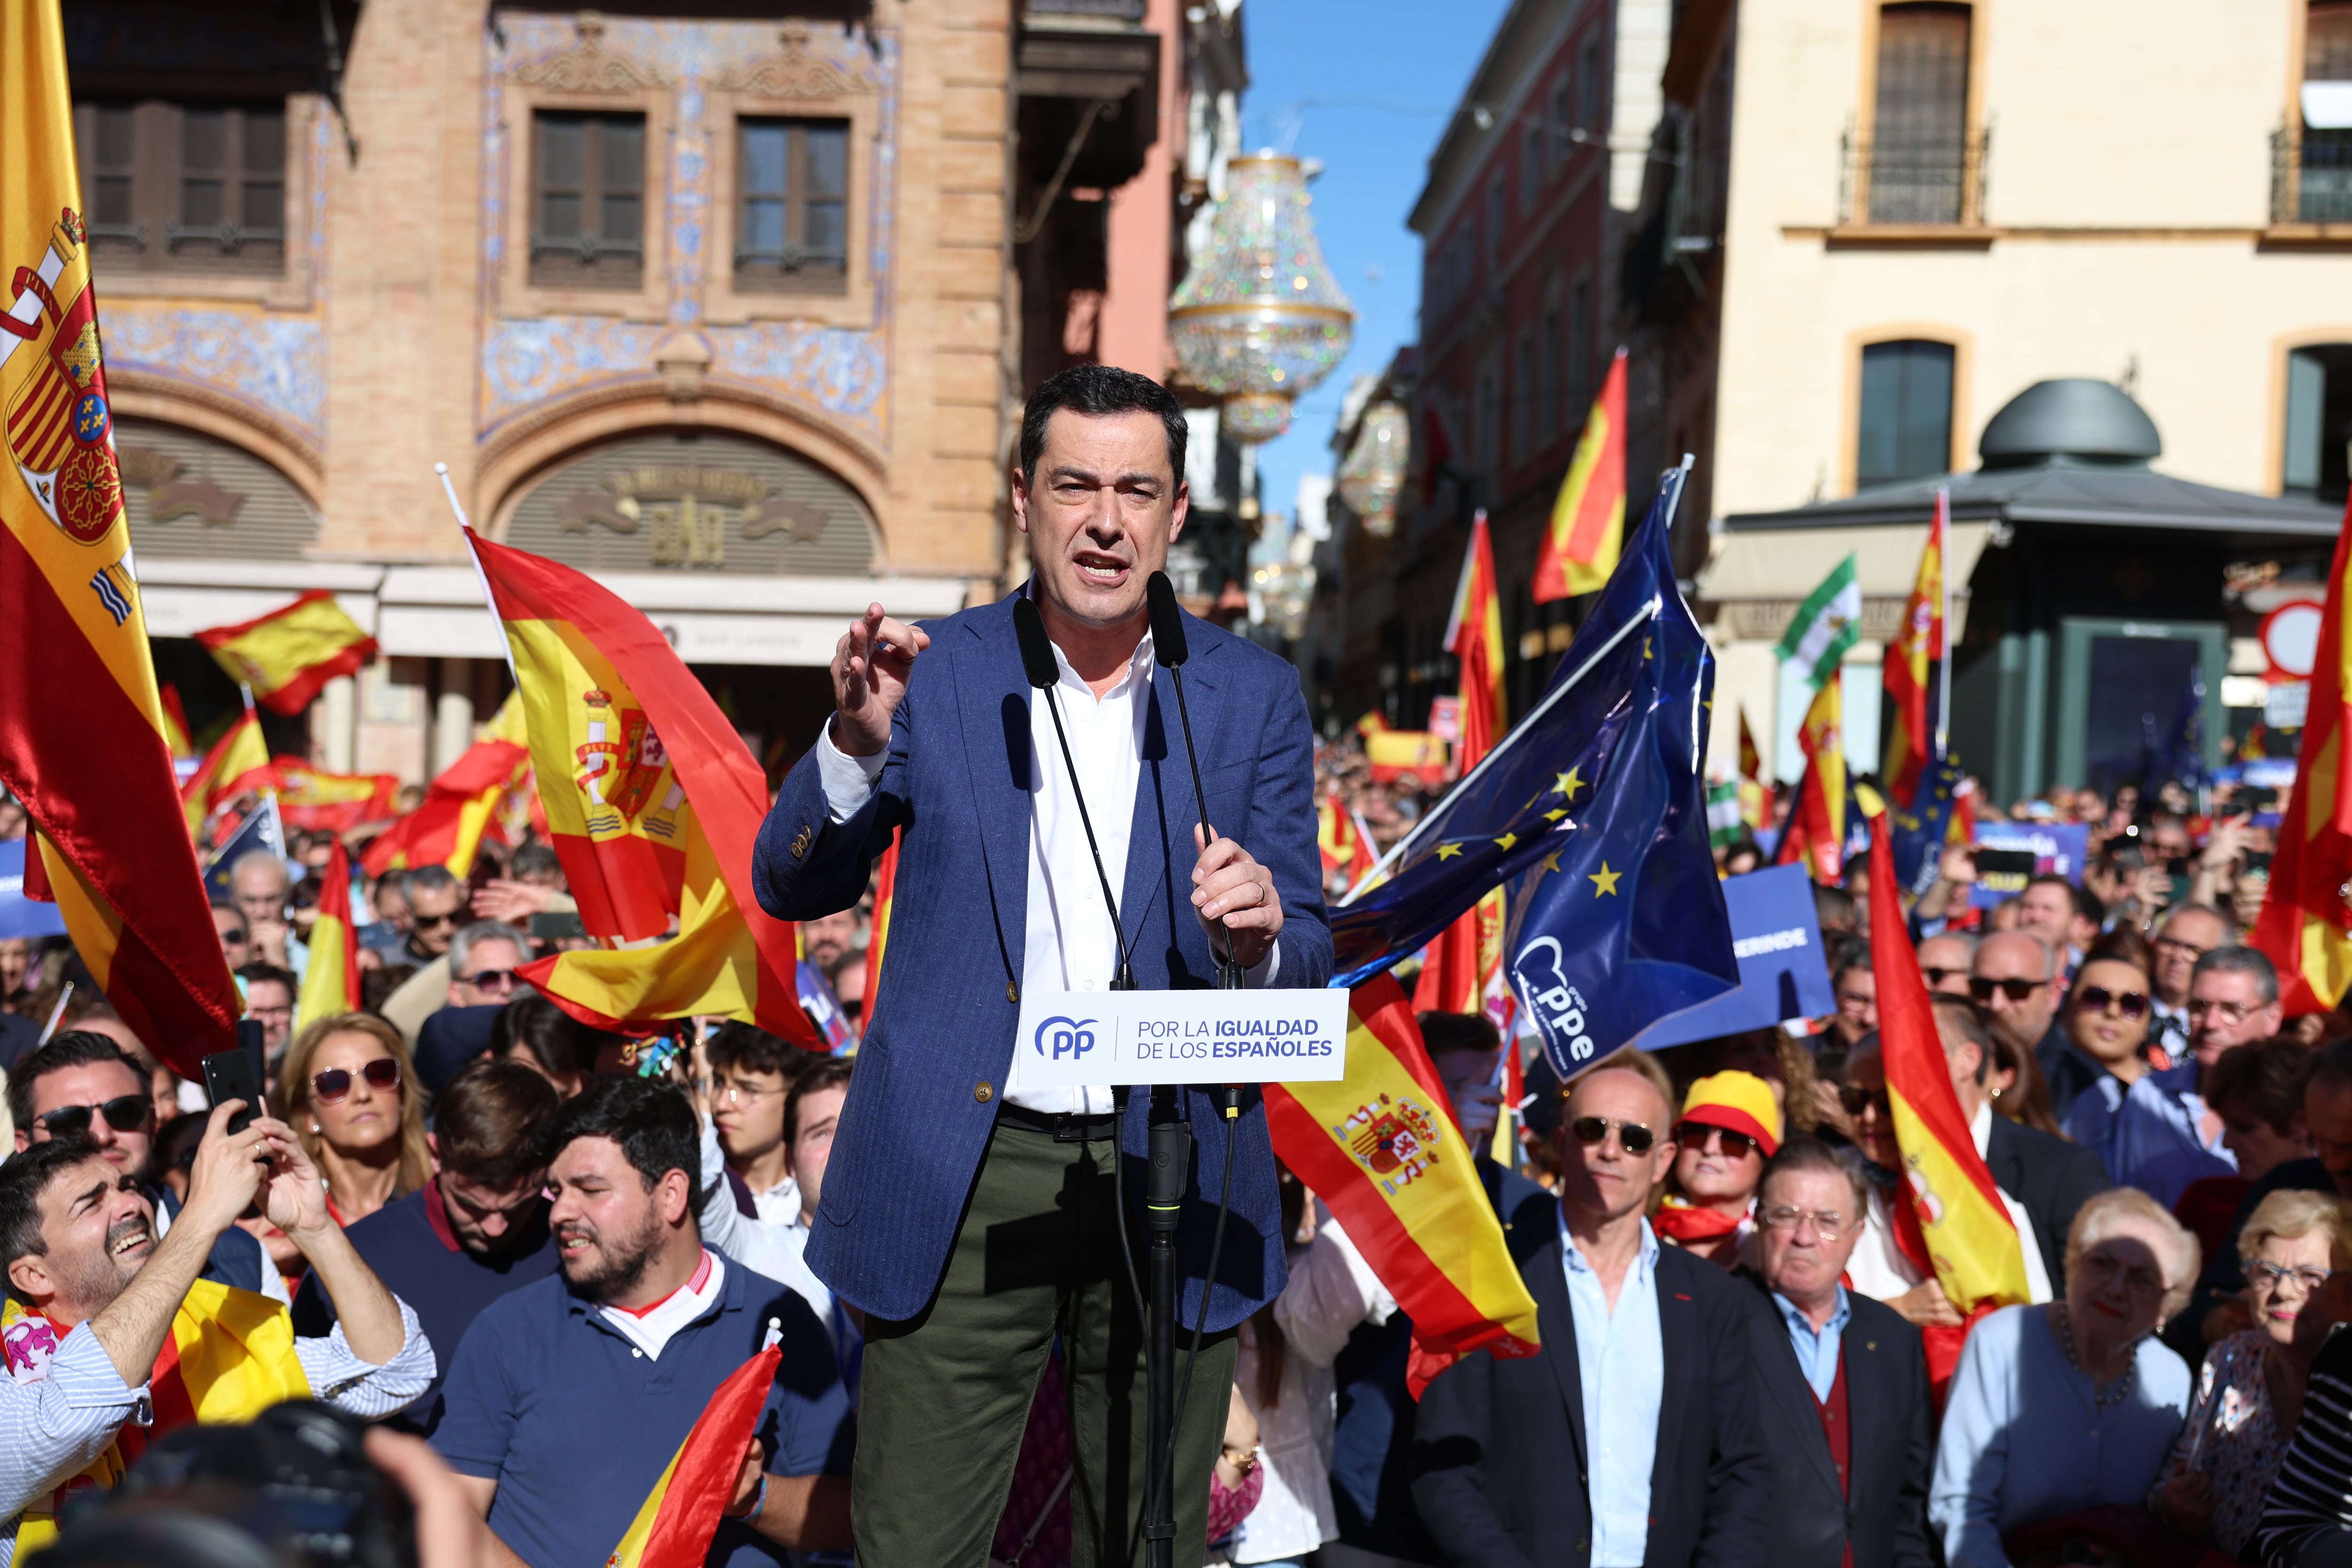 El presidente de la Junta de Andalucia, Juan Manuel Moreno, habla durante la concentración en contra de la amnistia en Sevilla.